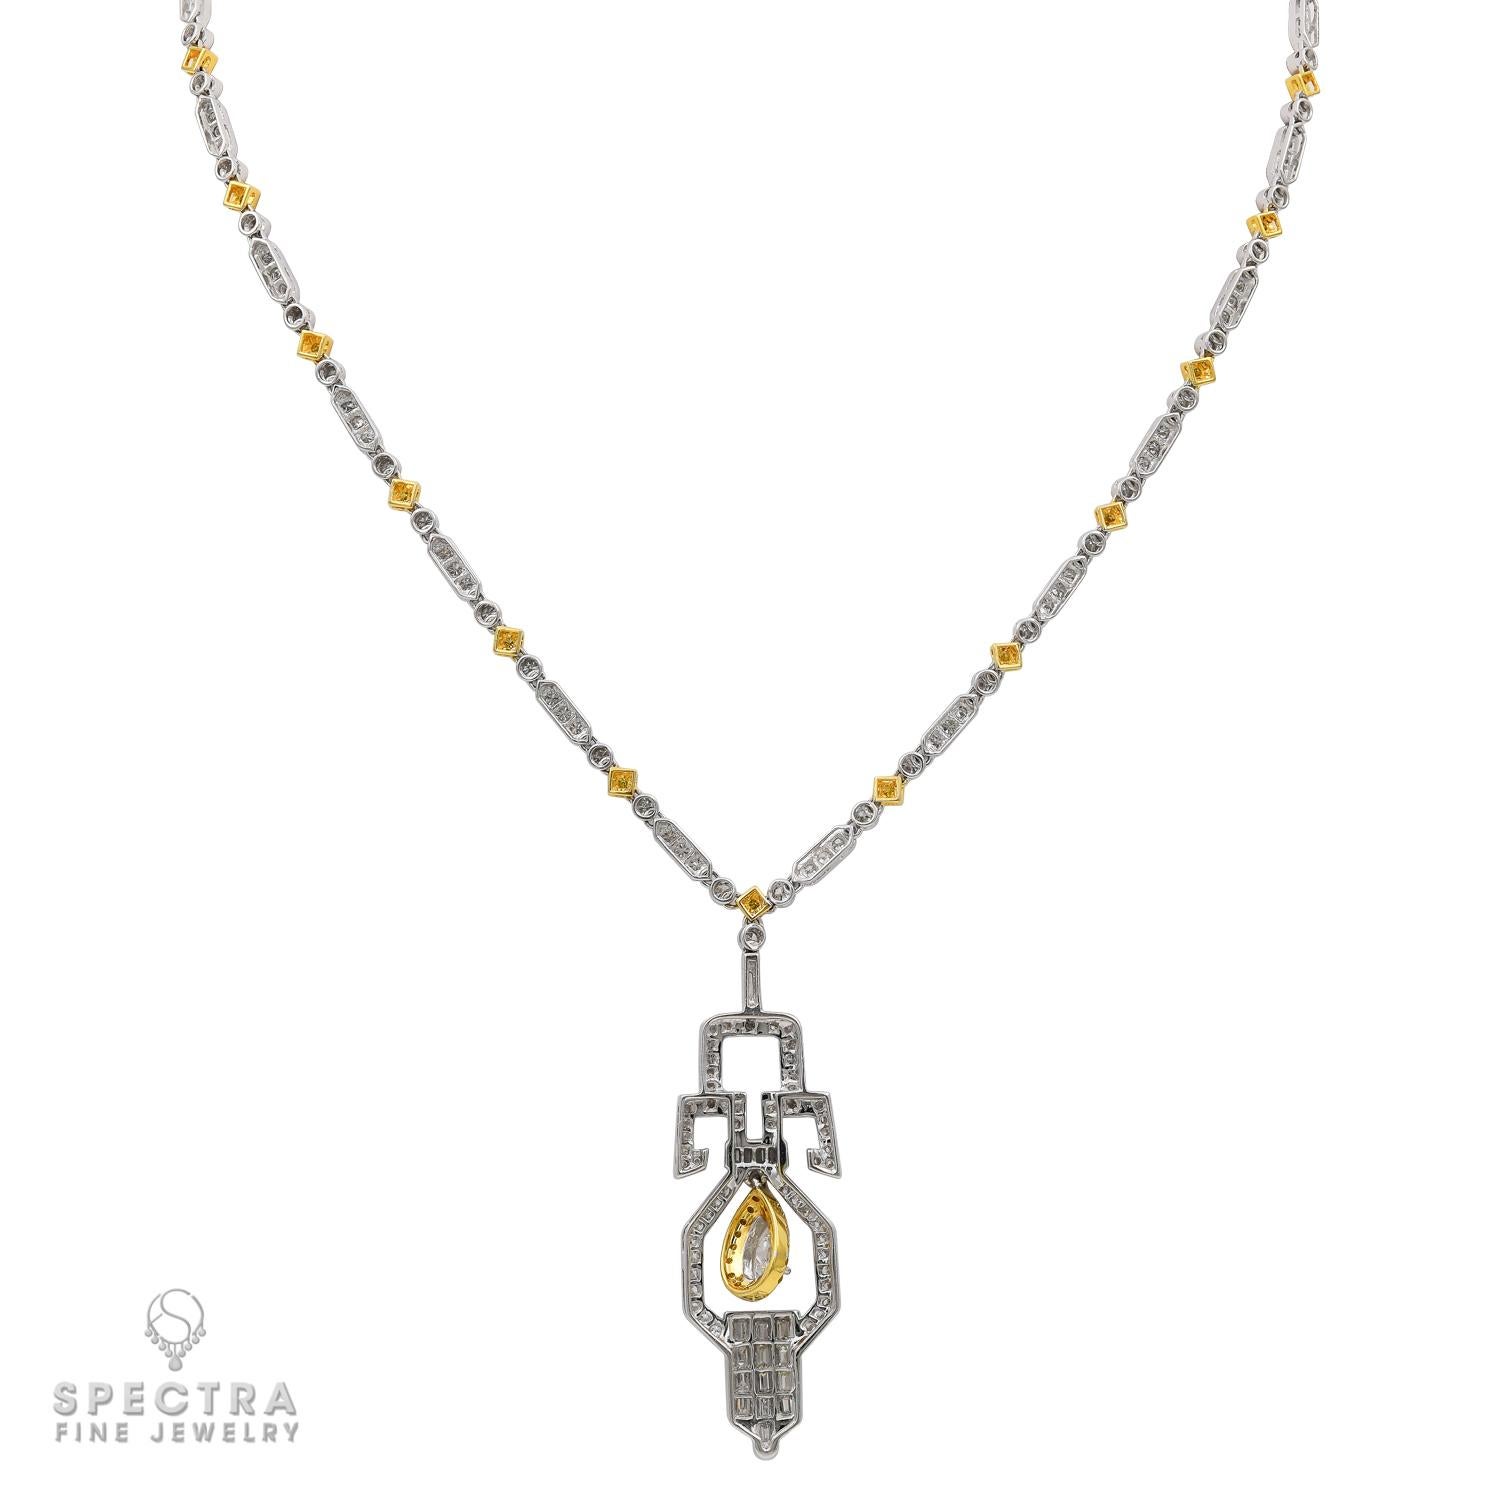 Ce collier de diamants présente la simplicité austère, les lignes épurées et les éléments géométriques d'une pièce opulente de la période Art déco, mais il a été fabriqué au XXIe siècle, en 2020. Réalisé en or blanc et jaune 18 carats, le collier de